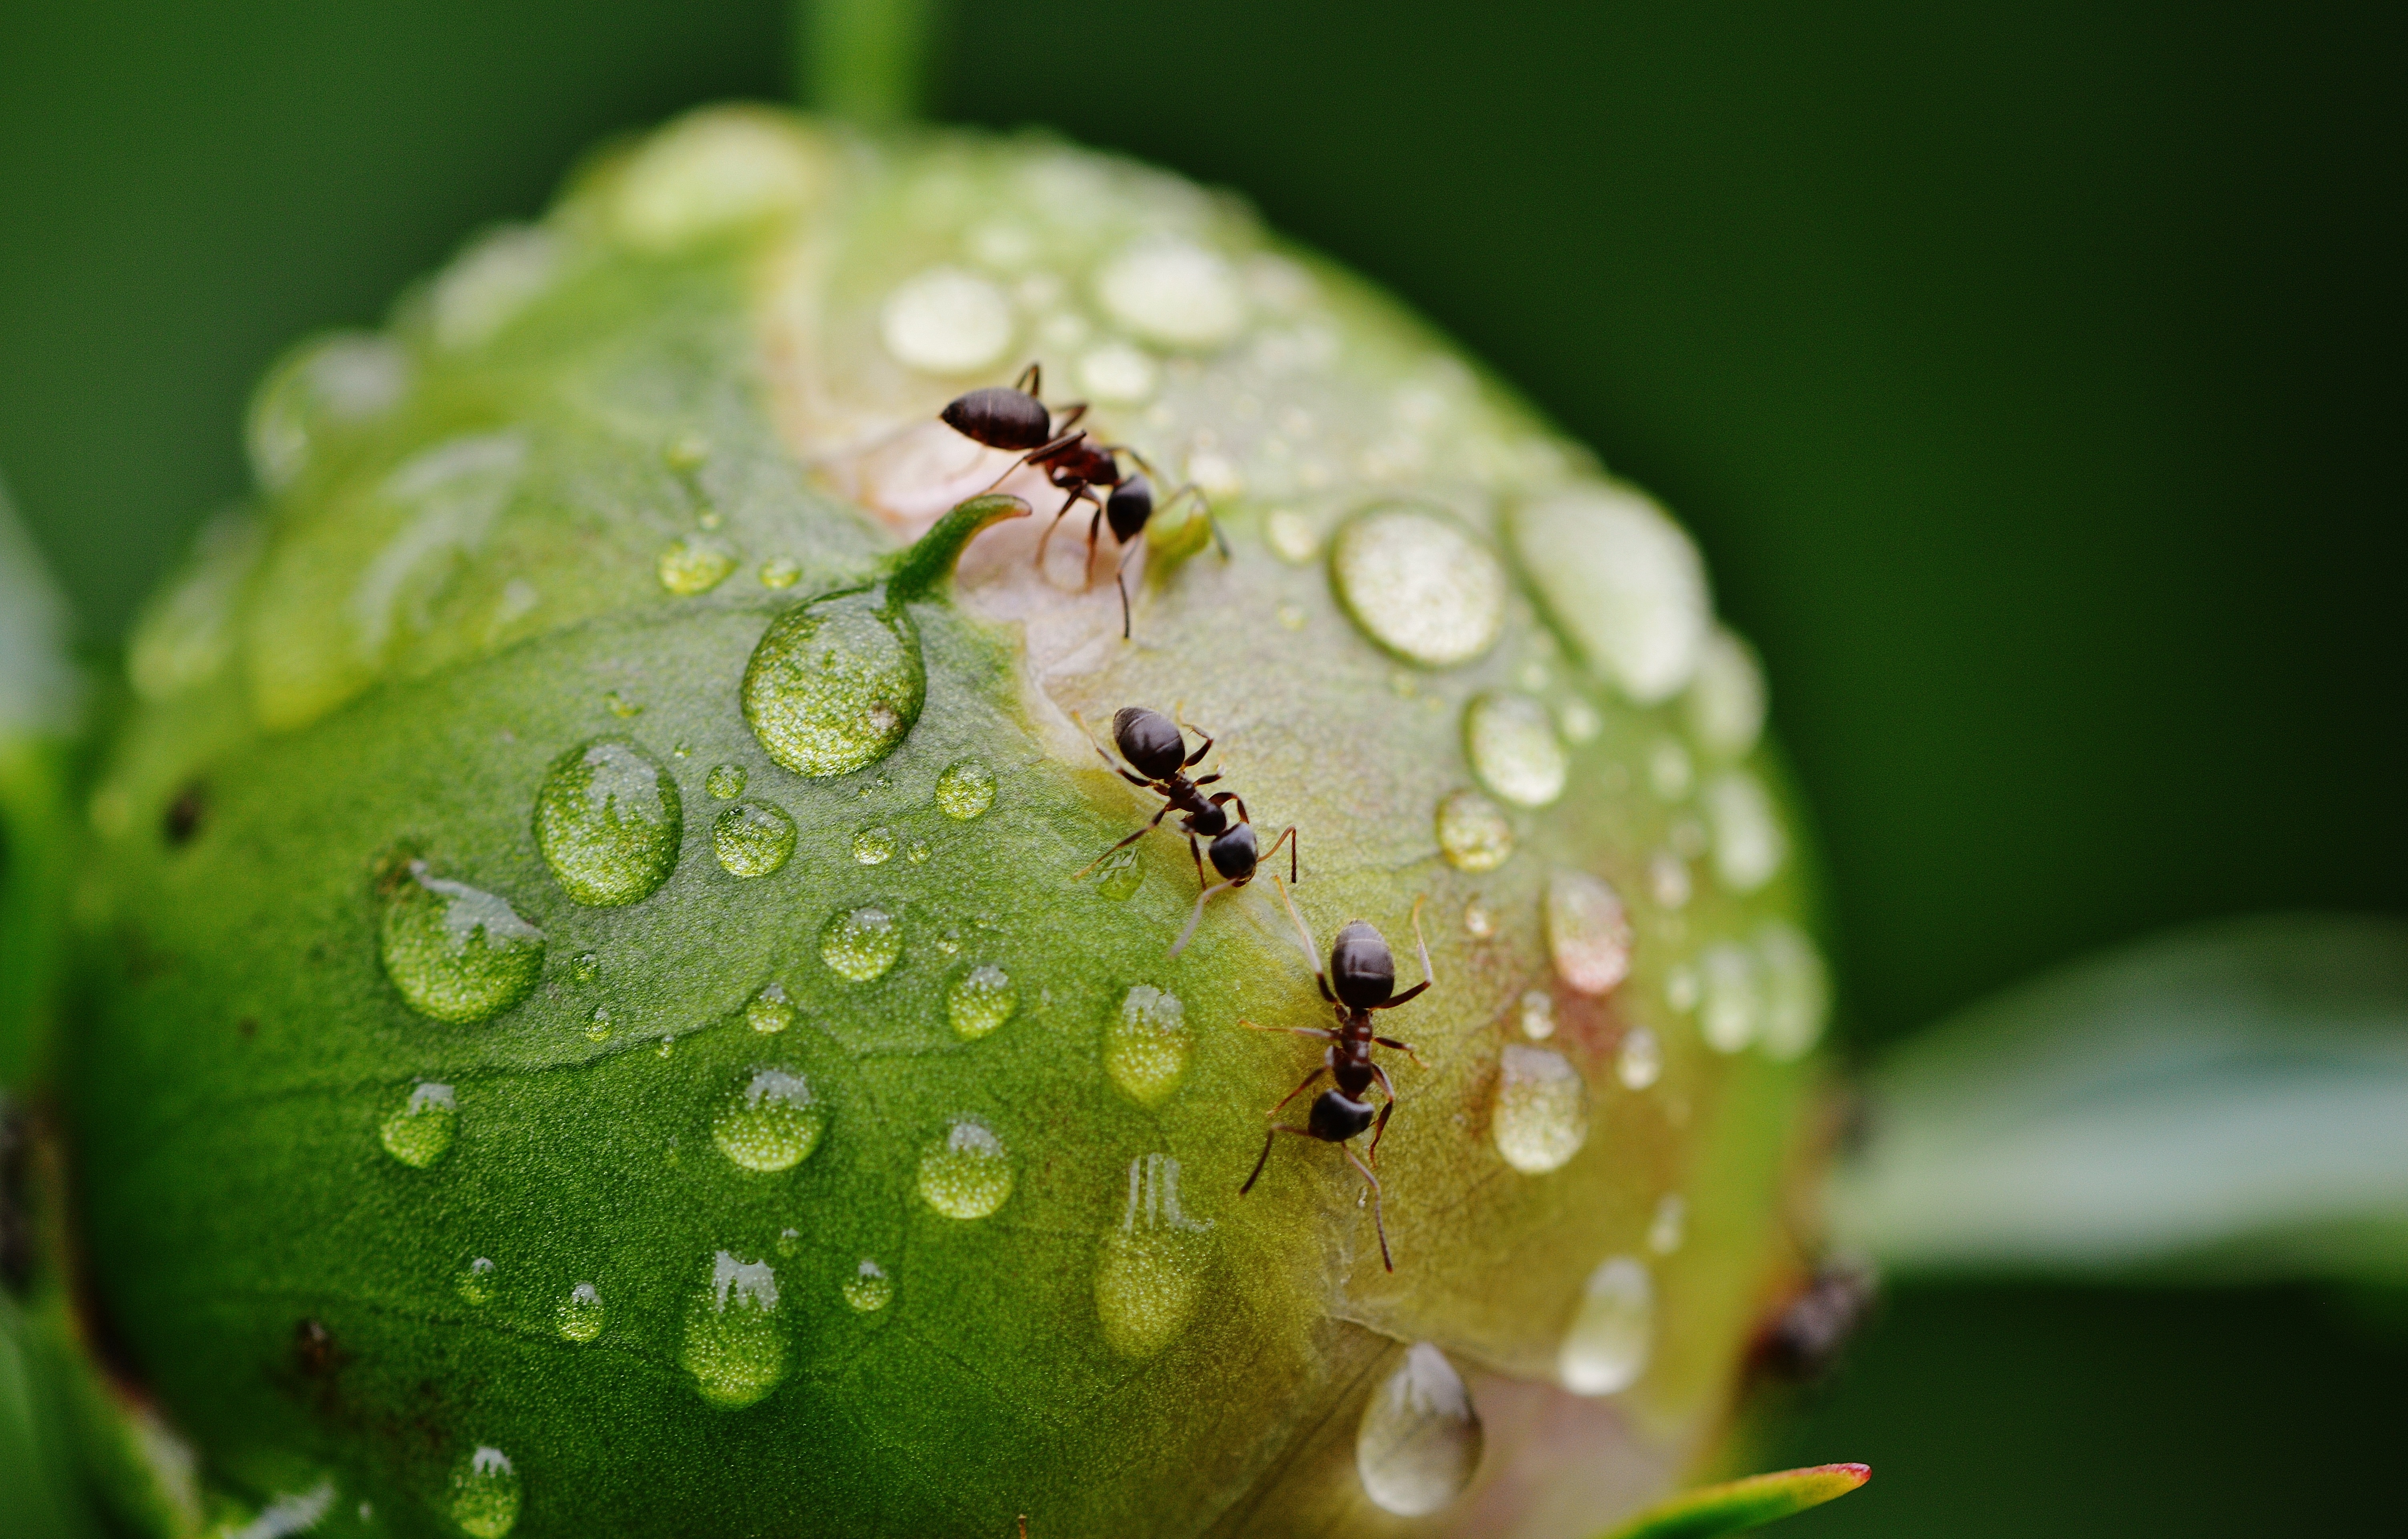 Избавьтесь от муравьев мгновенно: простое и безопасное средство от незваных гостей в вашем саду